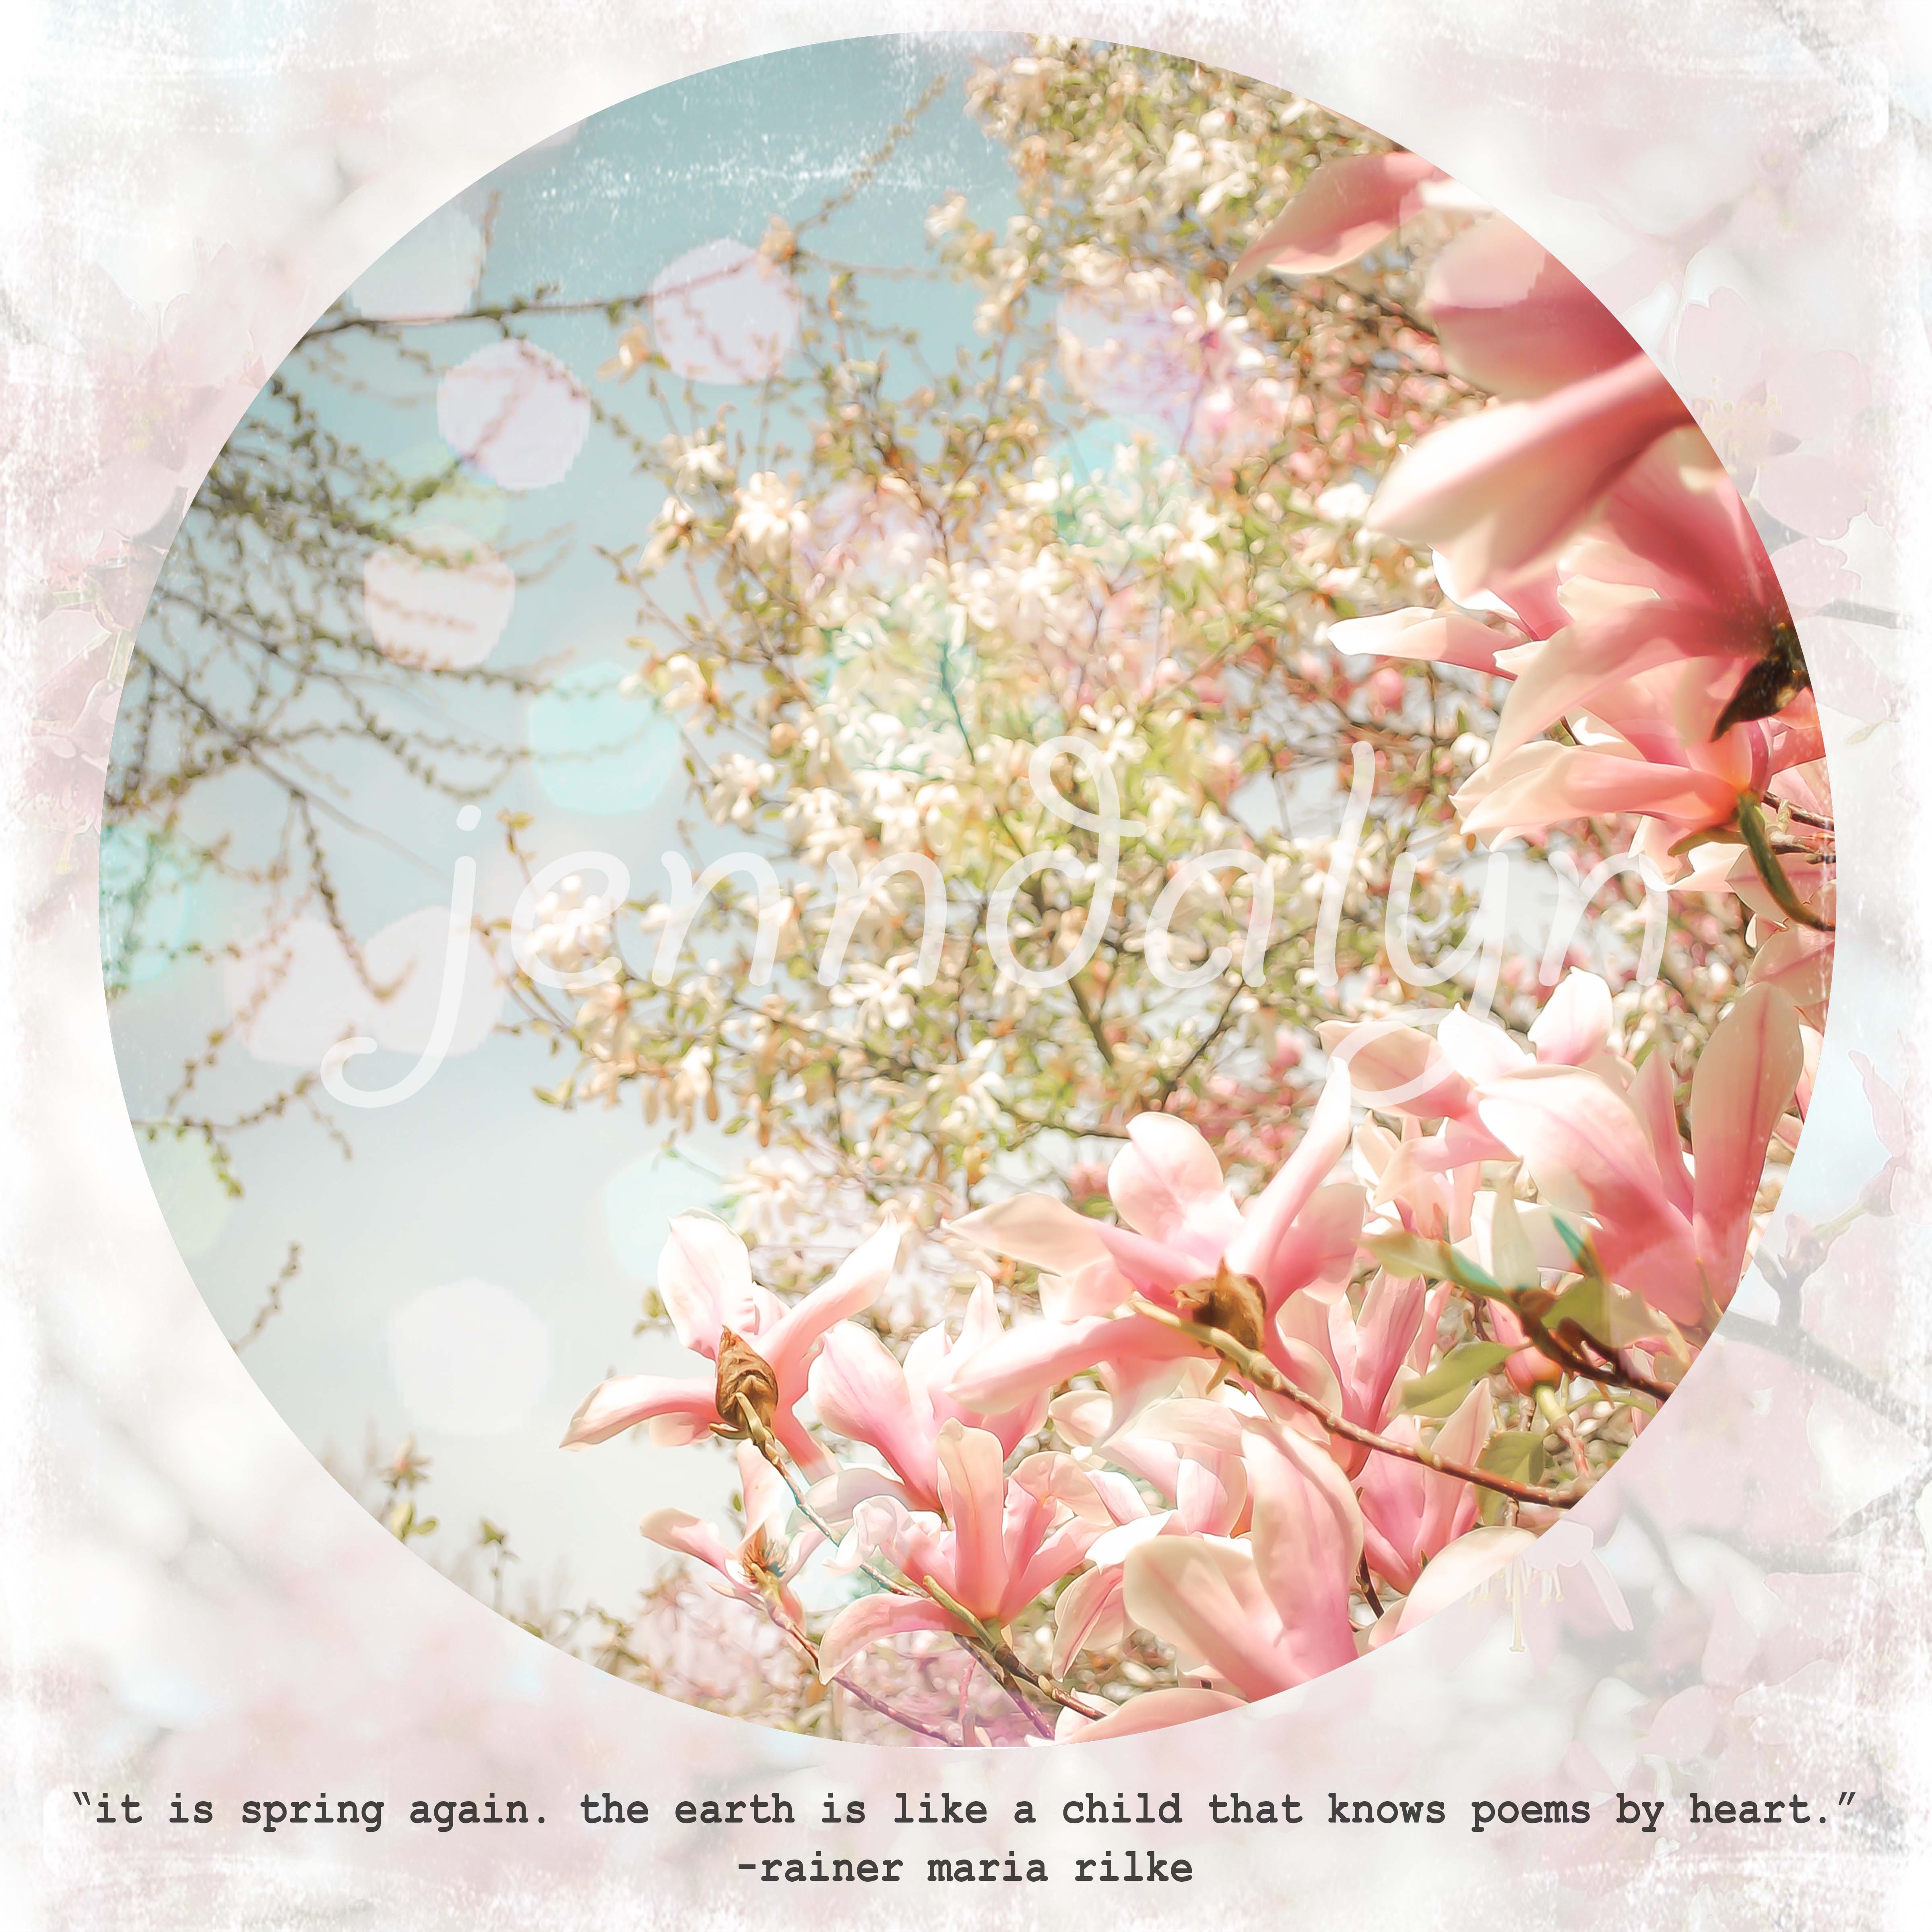 Magnolia Flower Quotes. QuotesGram
